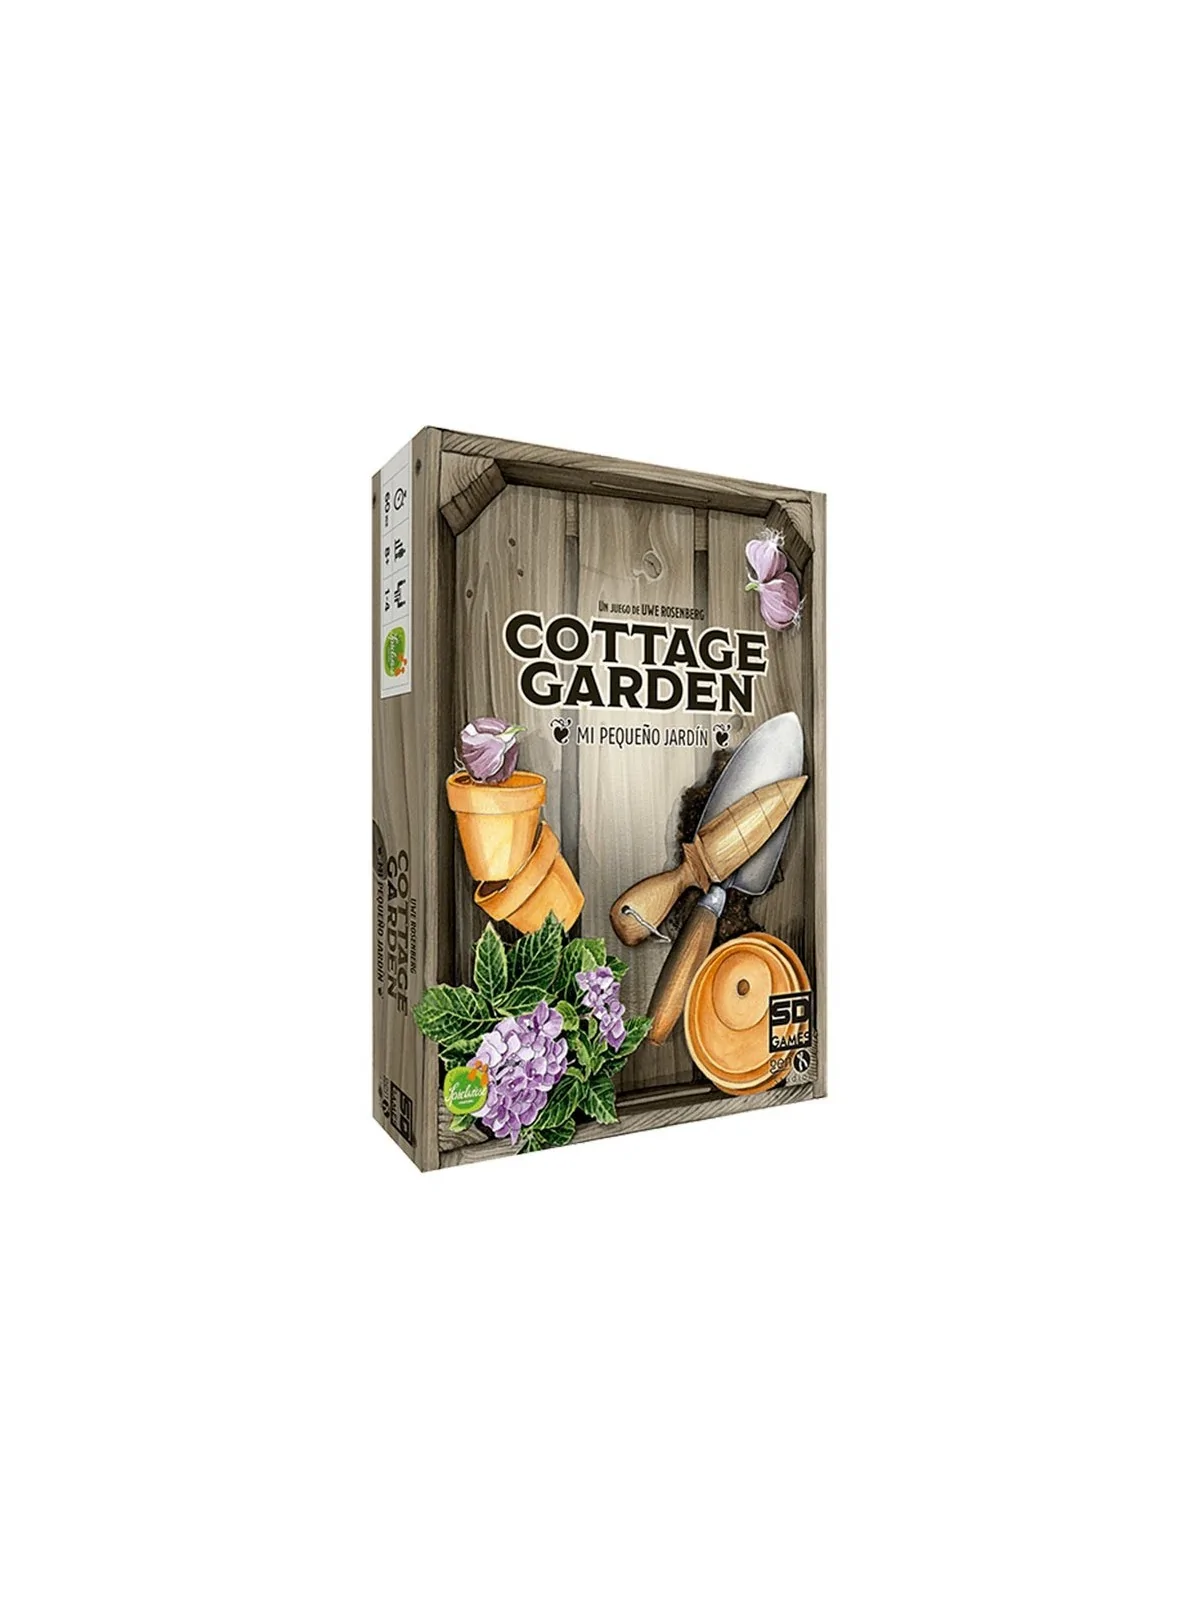 Comprar Cottage Garden barato al mejor precio 31,45 € de SD GAMES